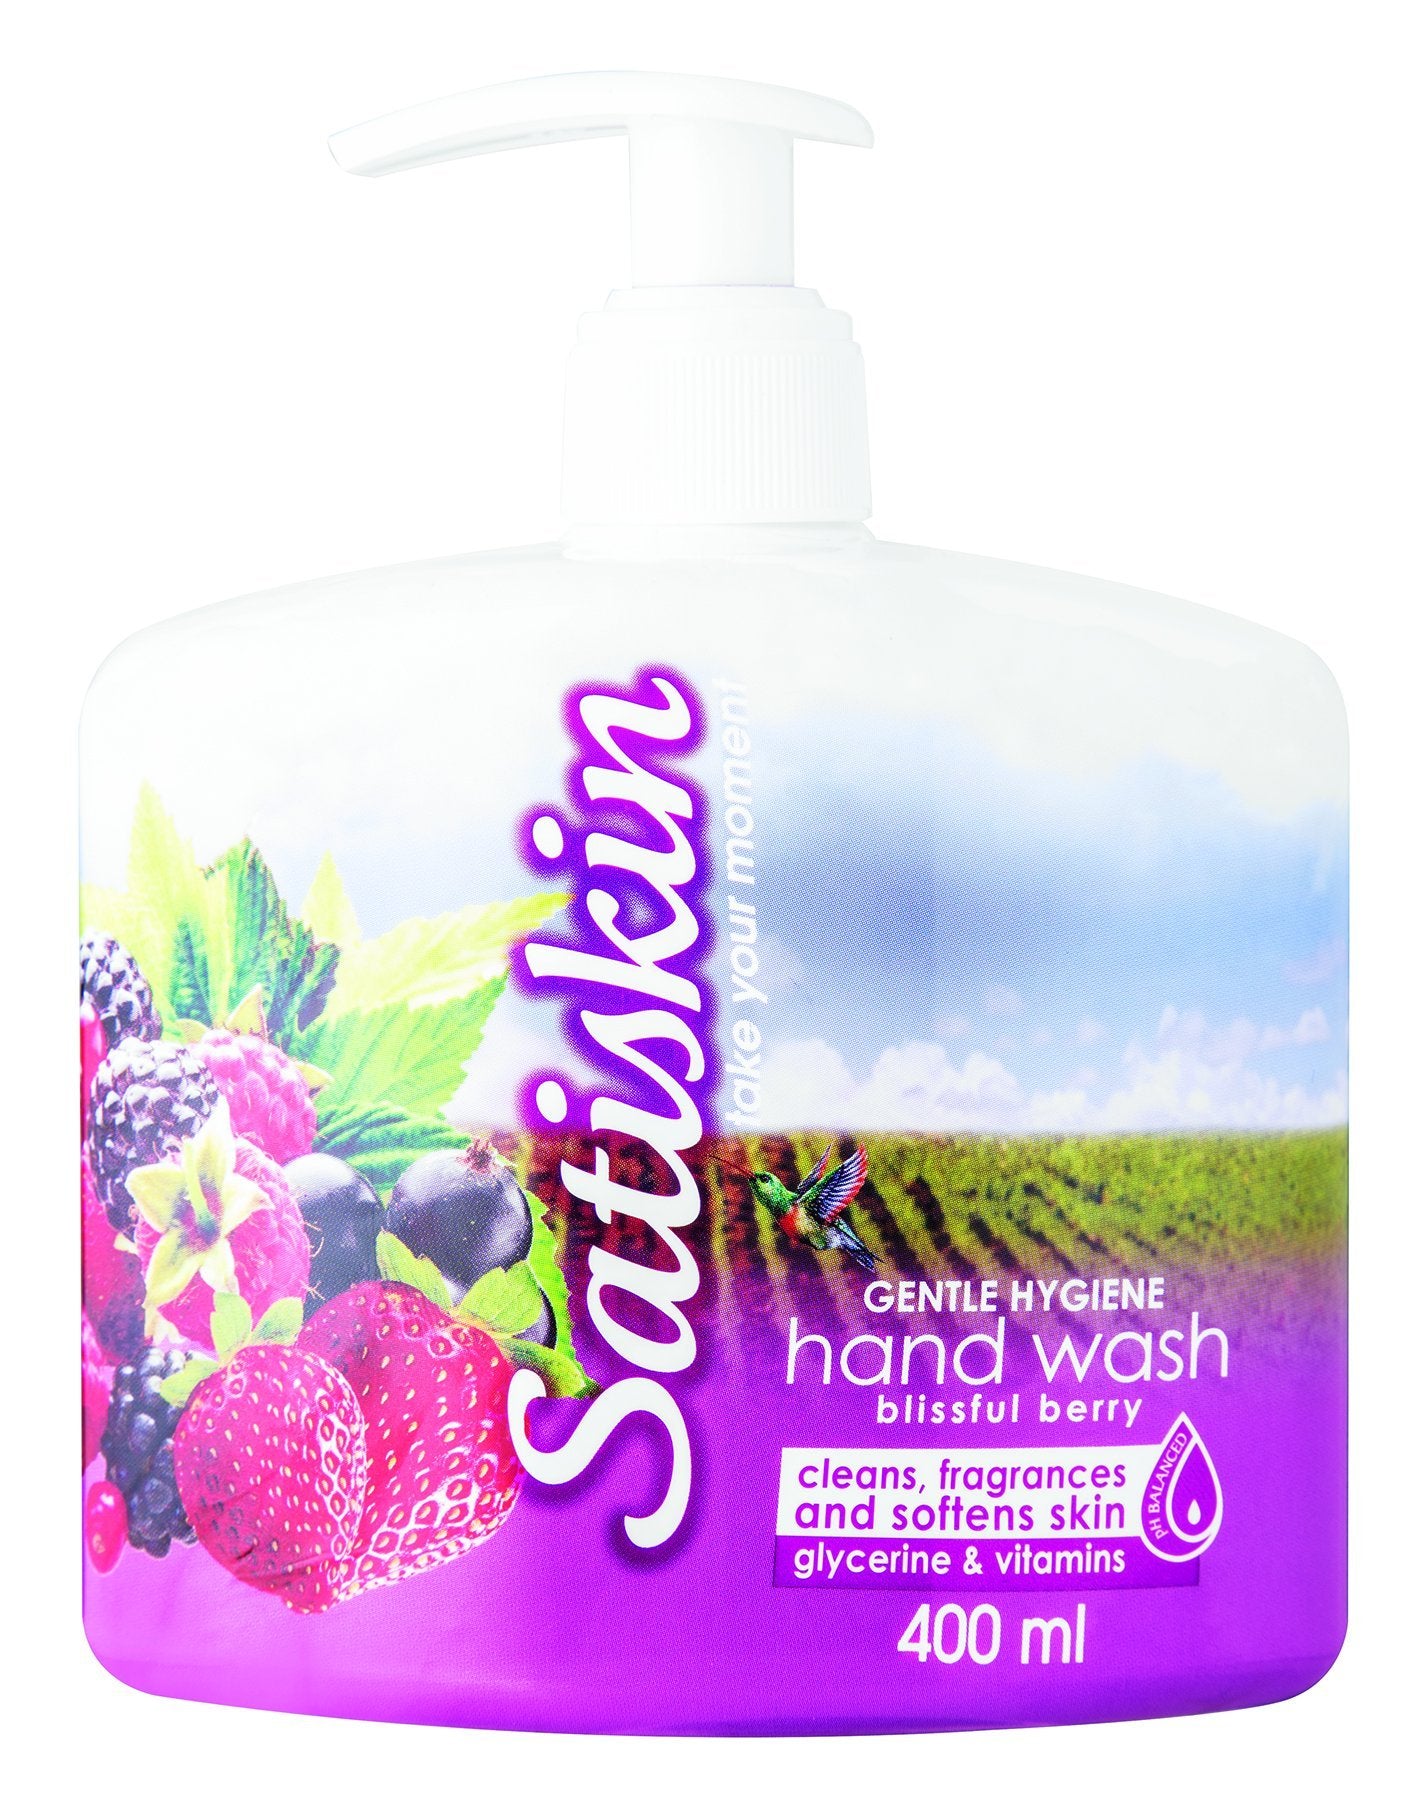 Satiskin Hand Wash - Blisfull Berry - 400ml 12-Pack